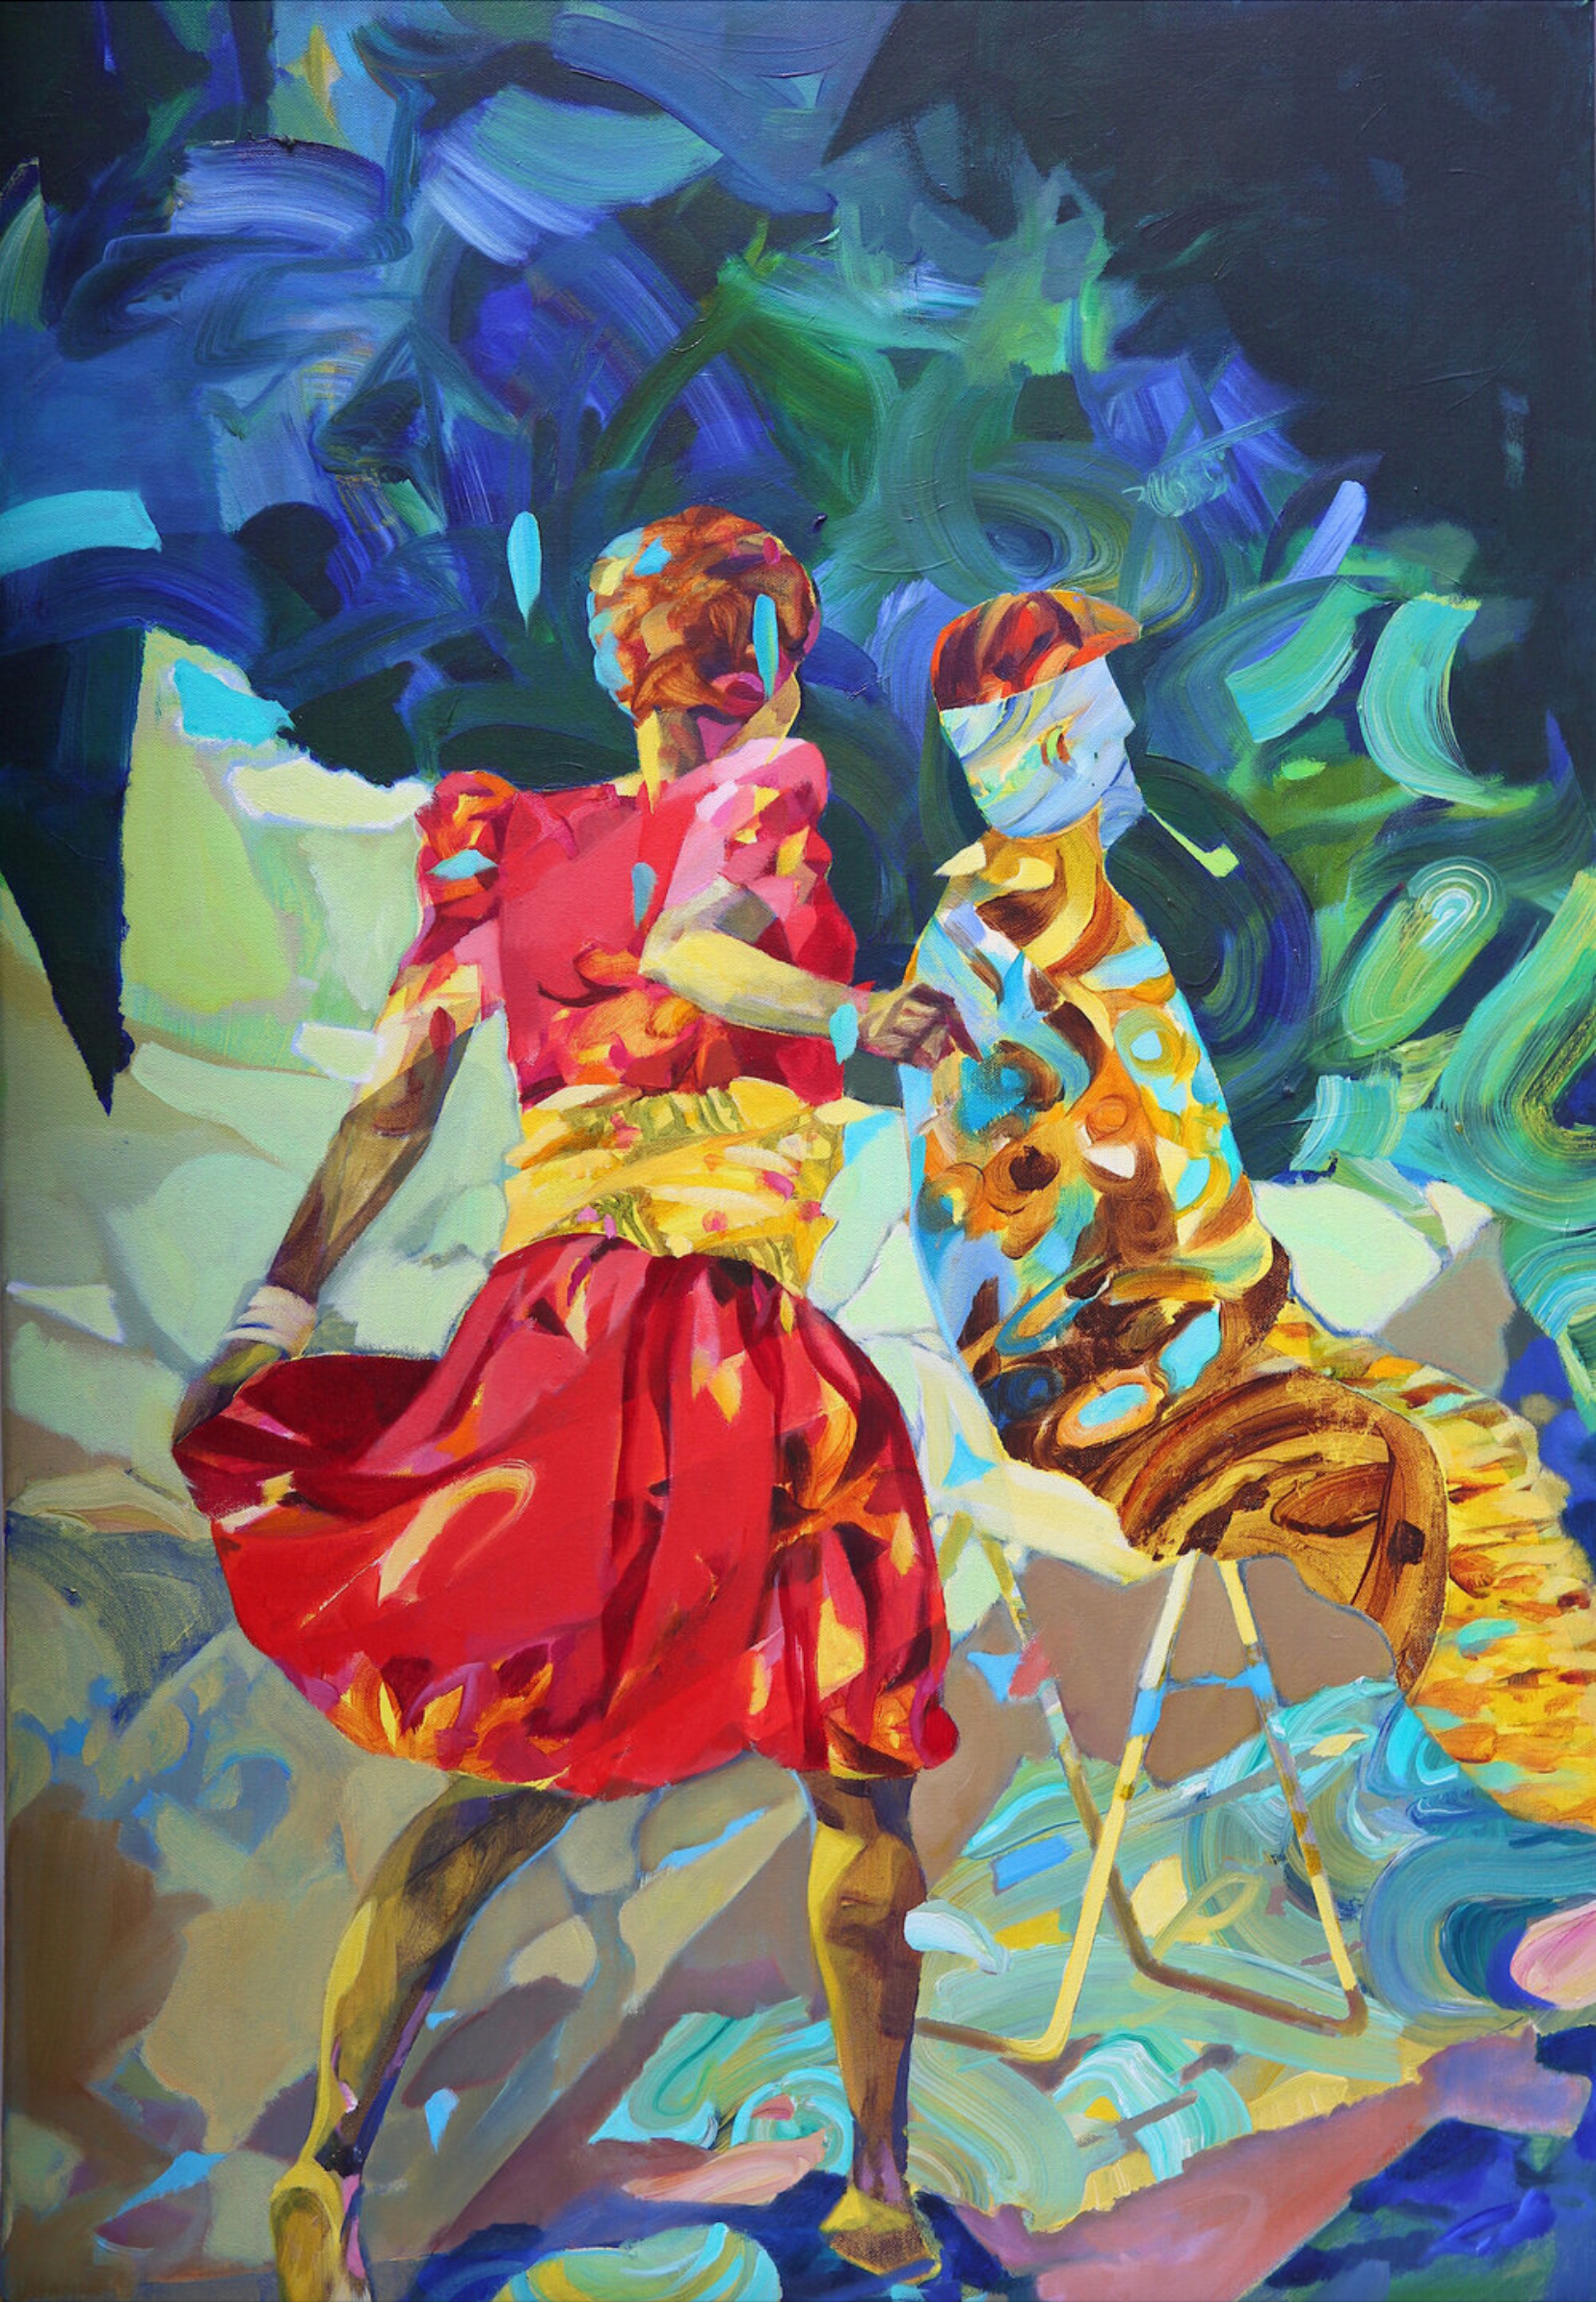 Melinda Matyas ist eine ungarische Malerin mit Sitz in London. Ihr  farbenfrohes figuratives expressionistisches Gemälde "There's a storm coming uncle Tom" ist gemalt mit Öl auf Leinwand.